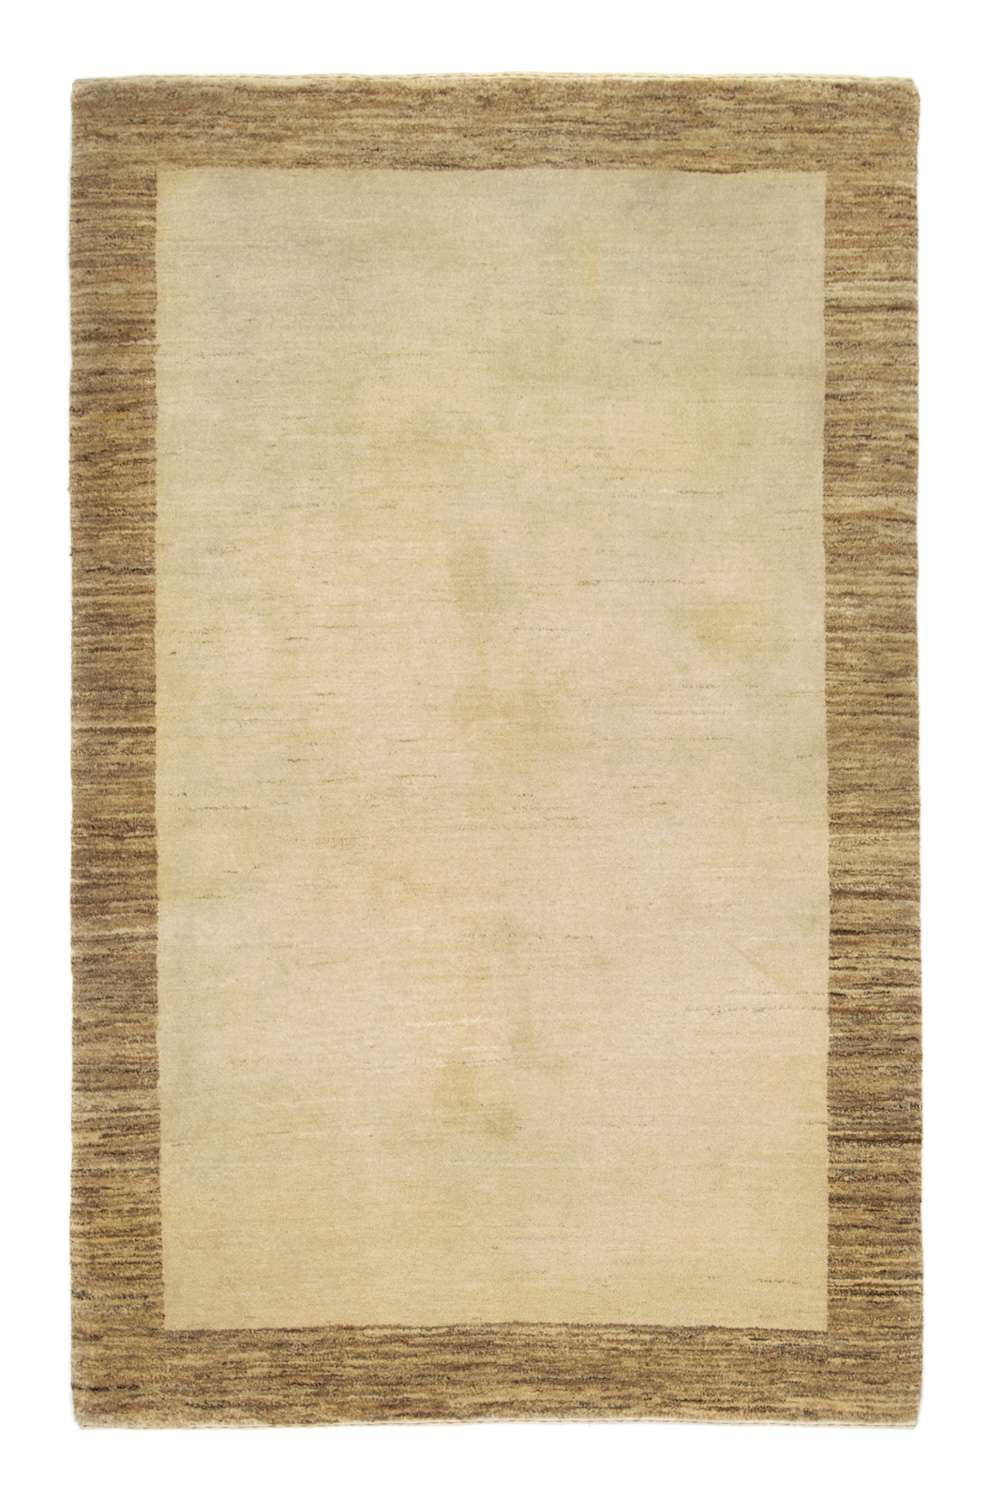 Gabbeh Teppich - Indus 188 x 124 cm